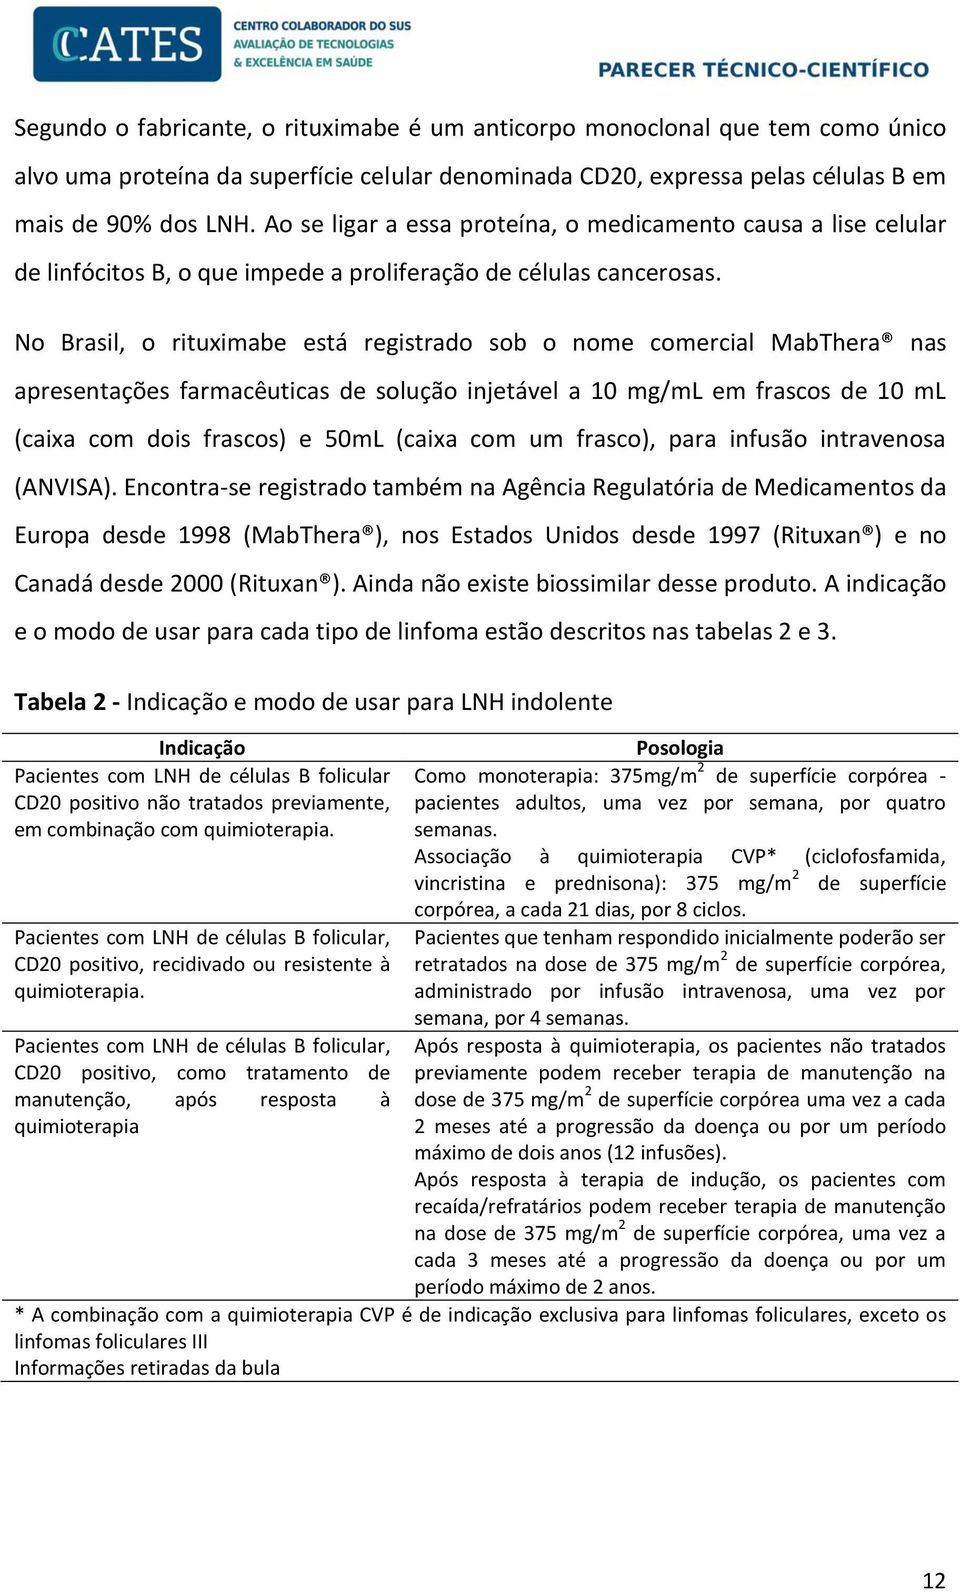 No Brasil, o rituximabe está registrado sob o nome comercial MabThera nas apresentações farmacêuticas de solução injetável a 10 mg/ml em frascos de 10 ml (caixa com dois frascos) e 50mL (caixa com um